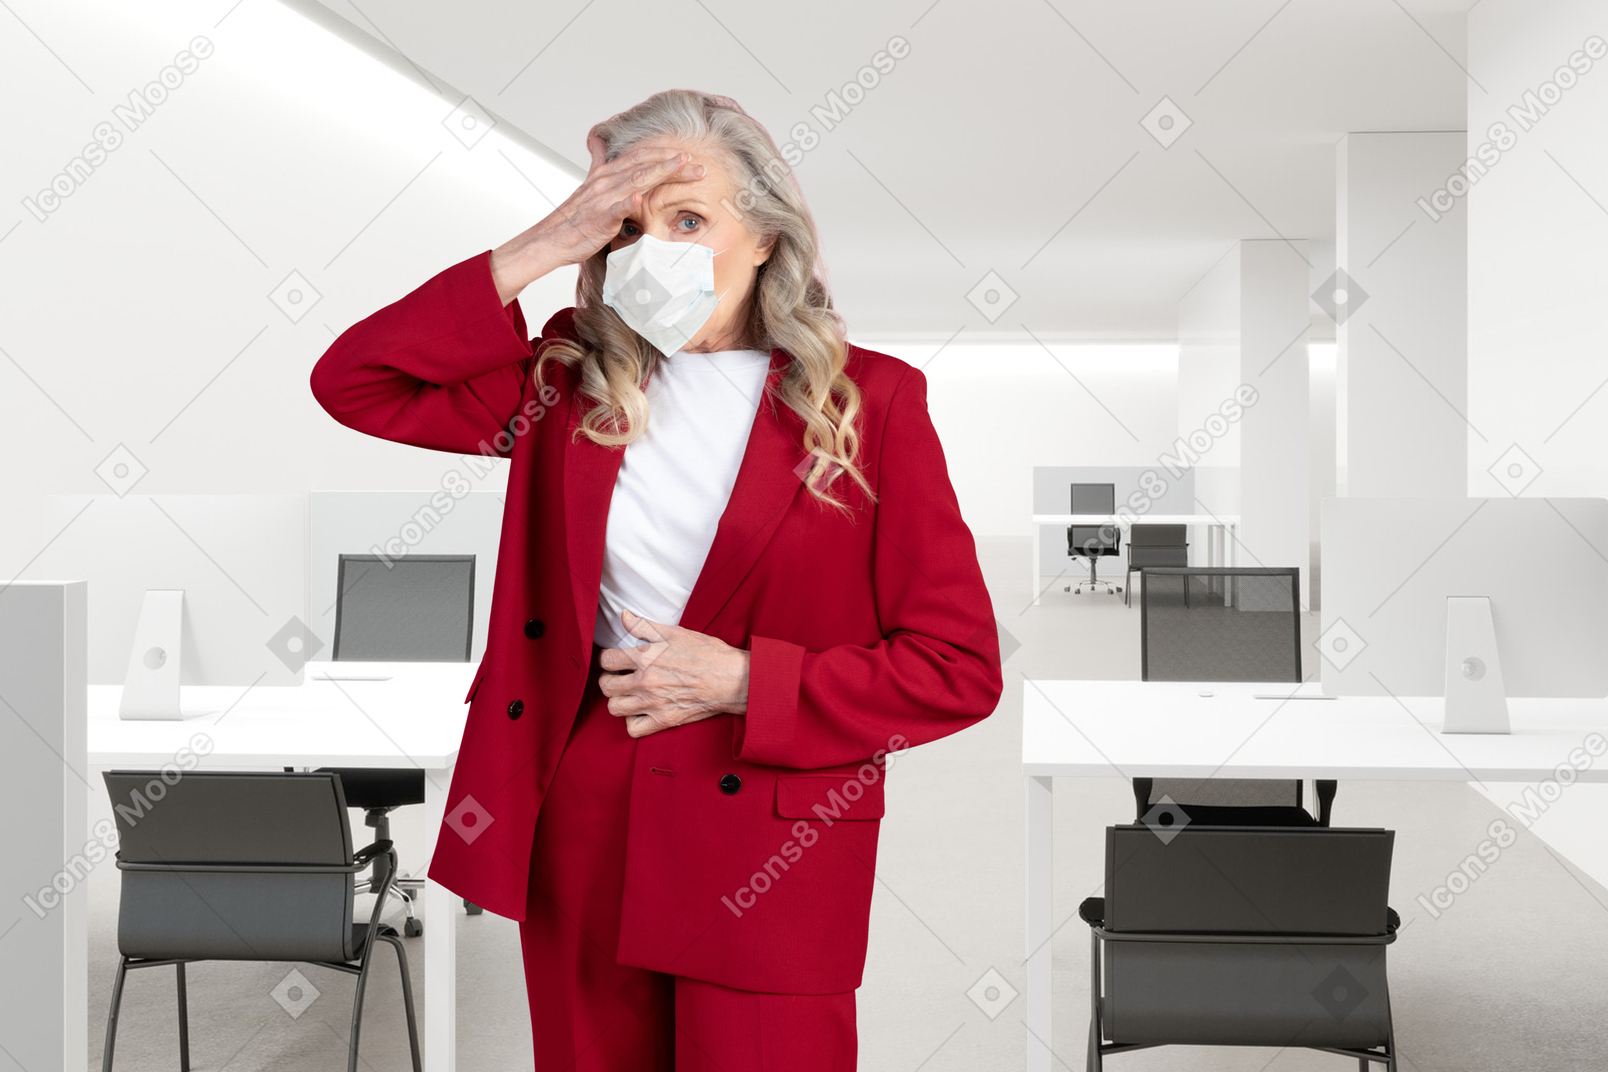 Ältere frau mit gesichtsmaske, die im büro steht und ihre stirn berührt